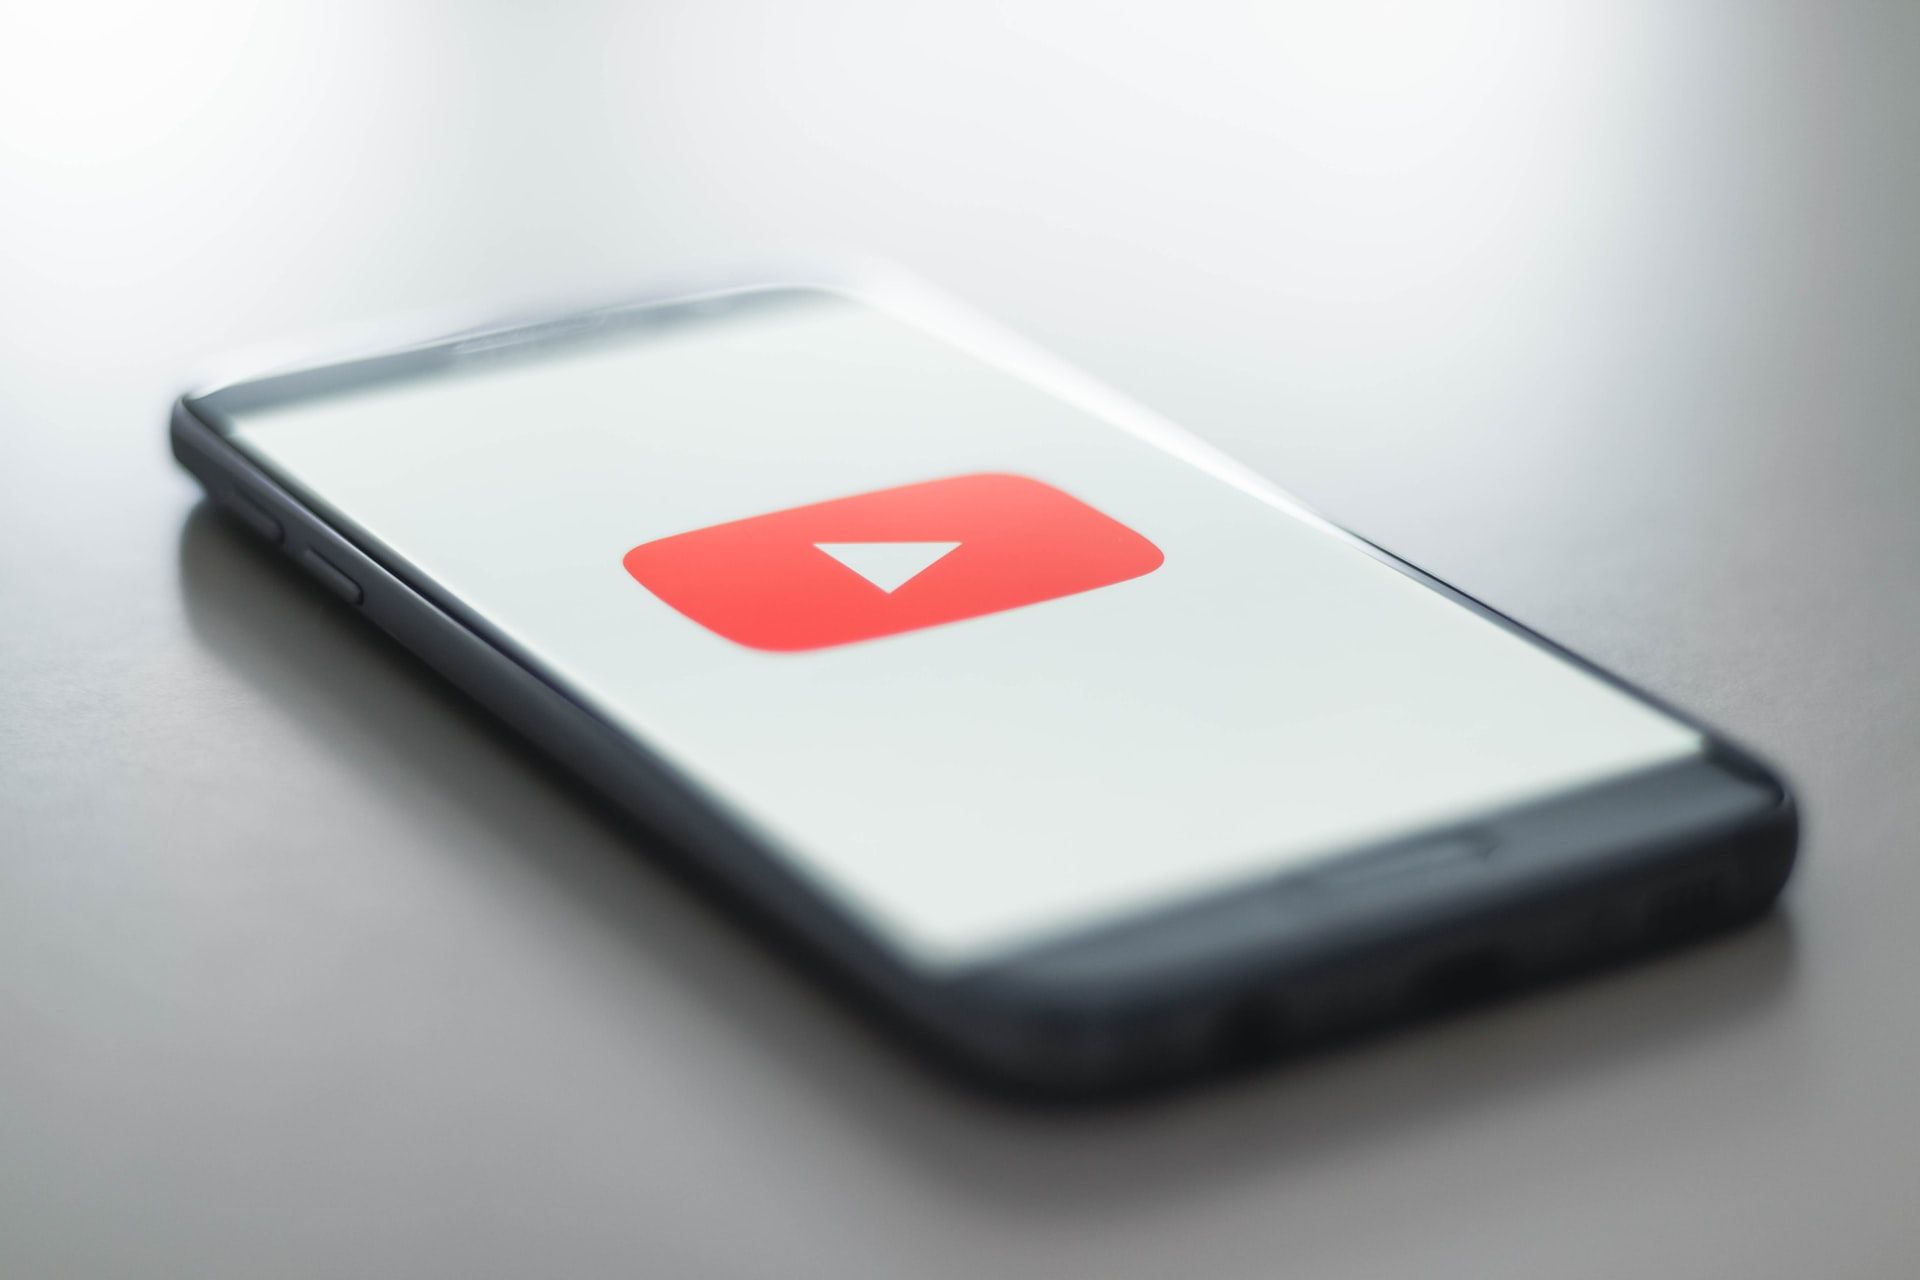 YouTube оновлює налаштування, які допоможуть економити використання даних під час перегляду відео в дорозі